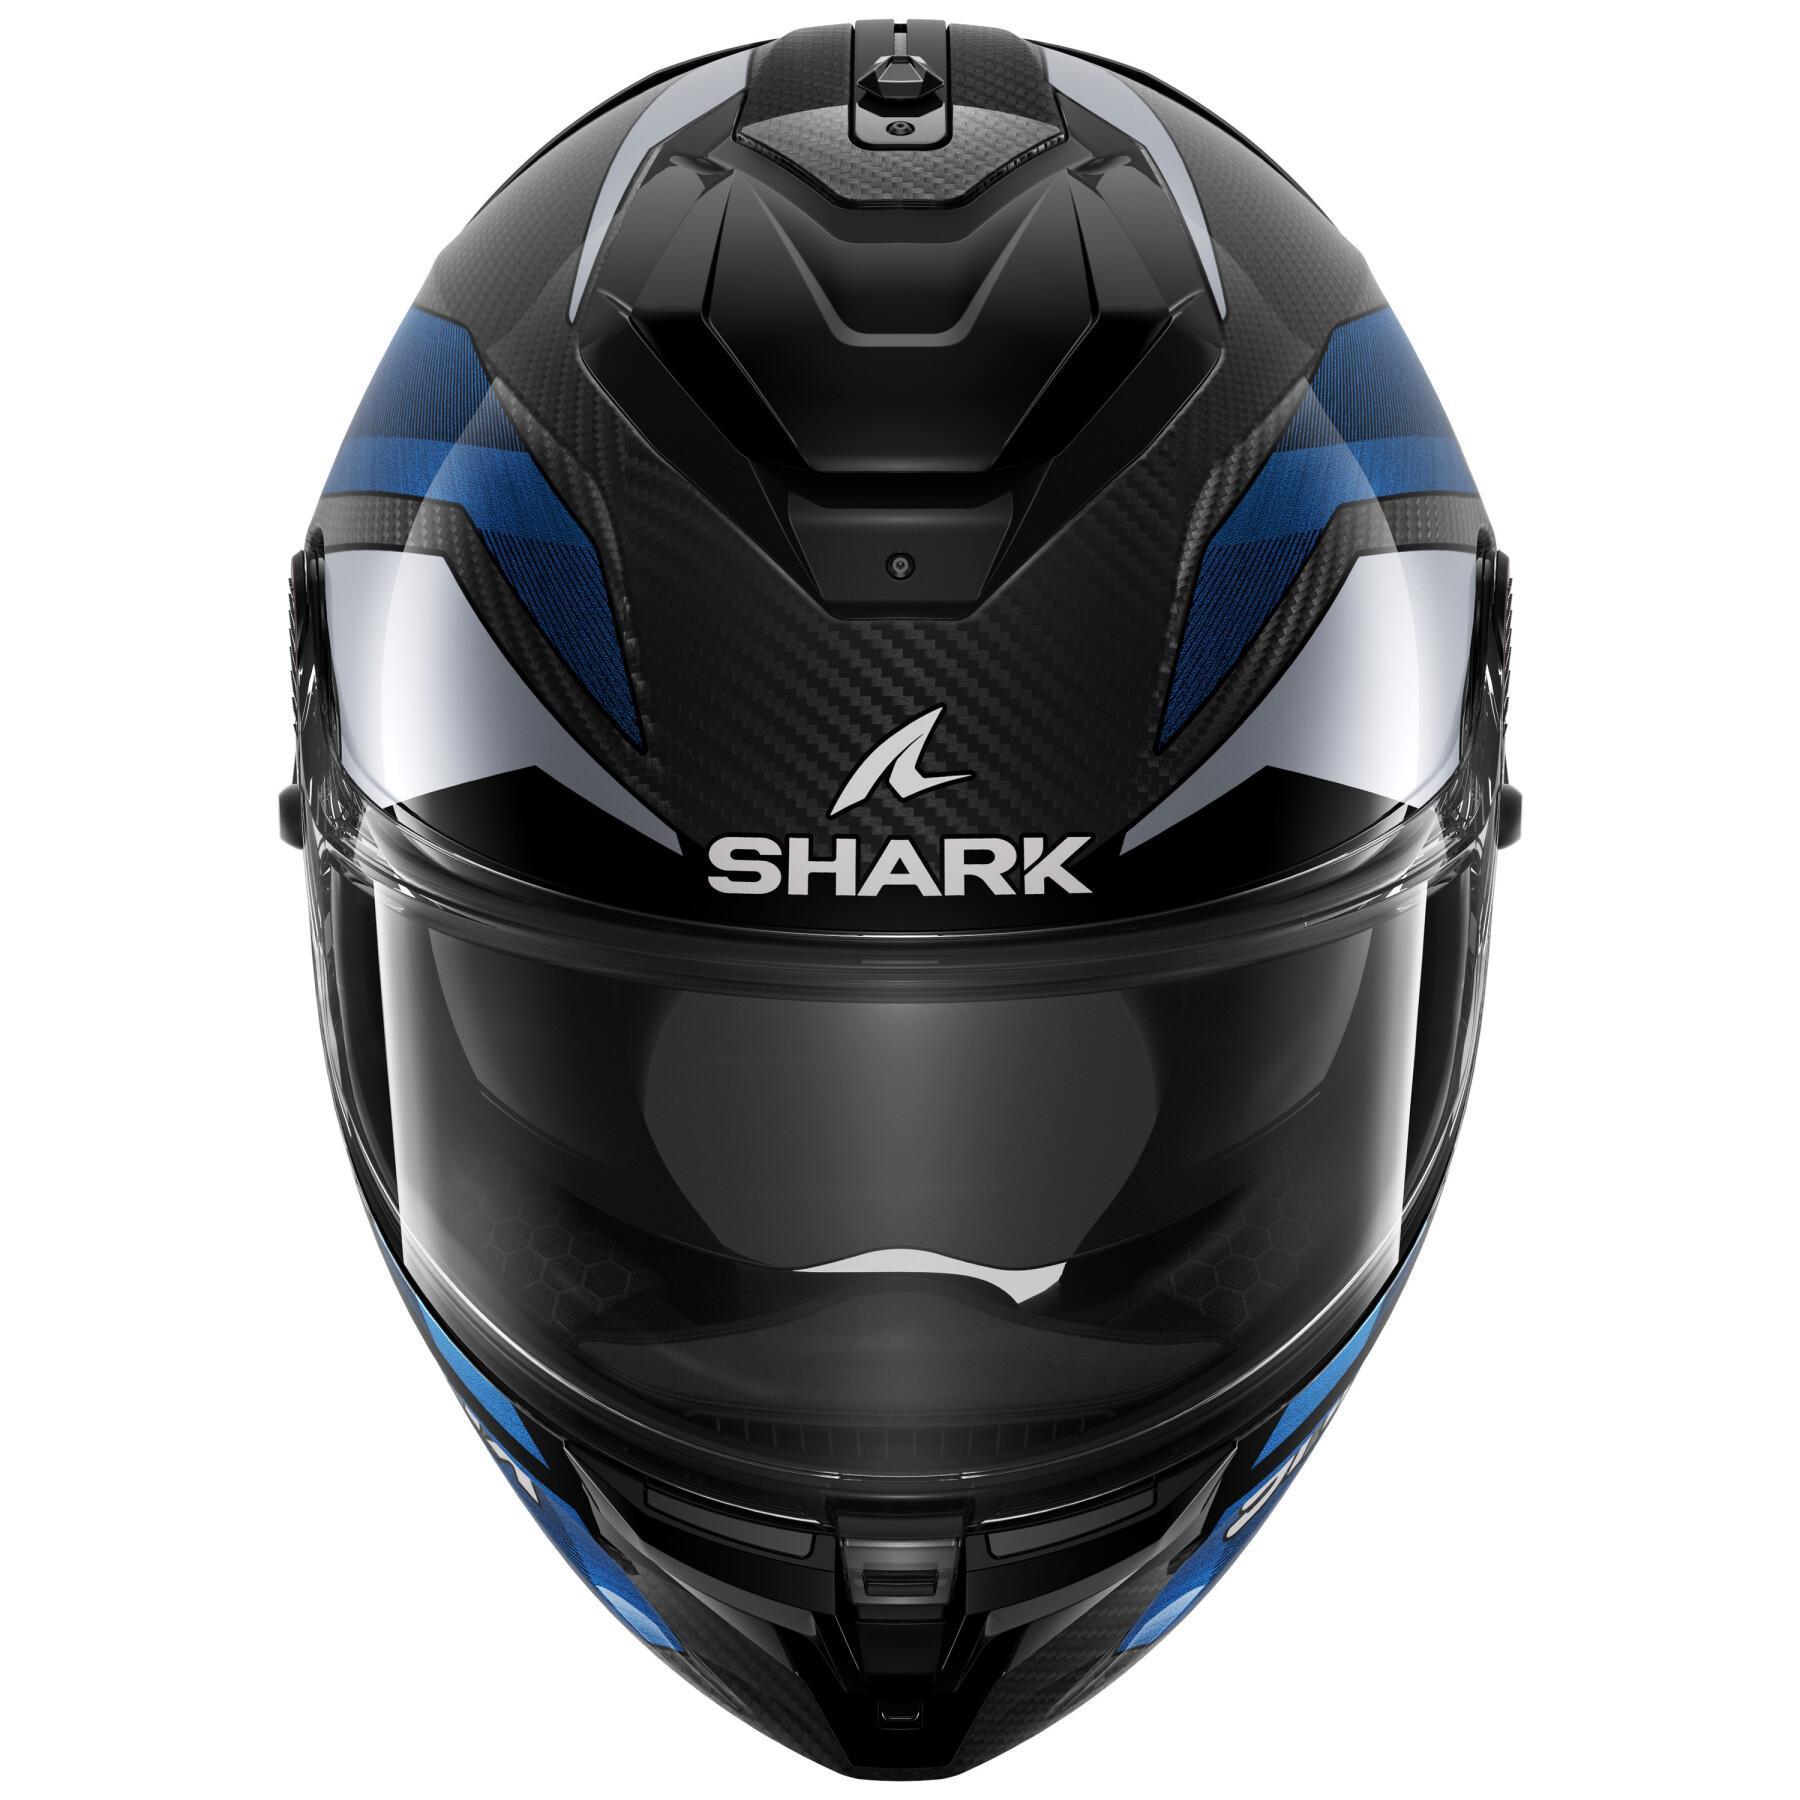 Full face motorcycle helmet Shark Spartan Gt Pro Ritmo